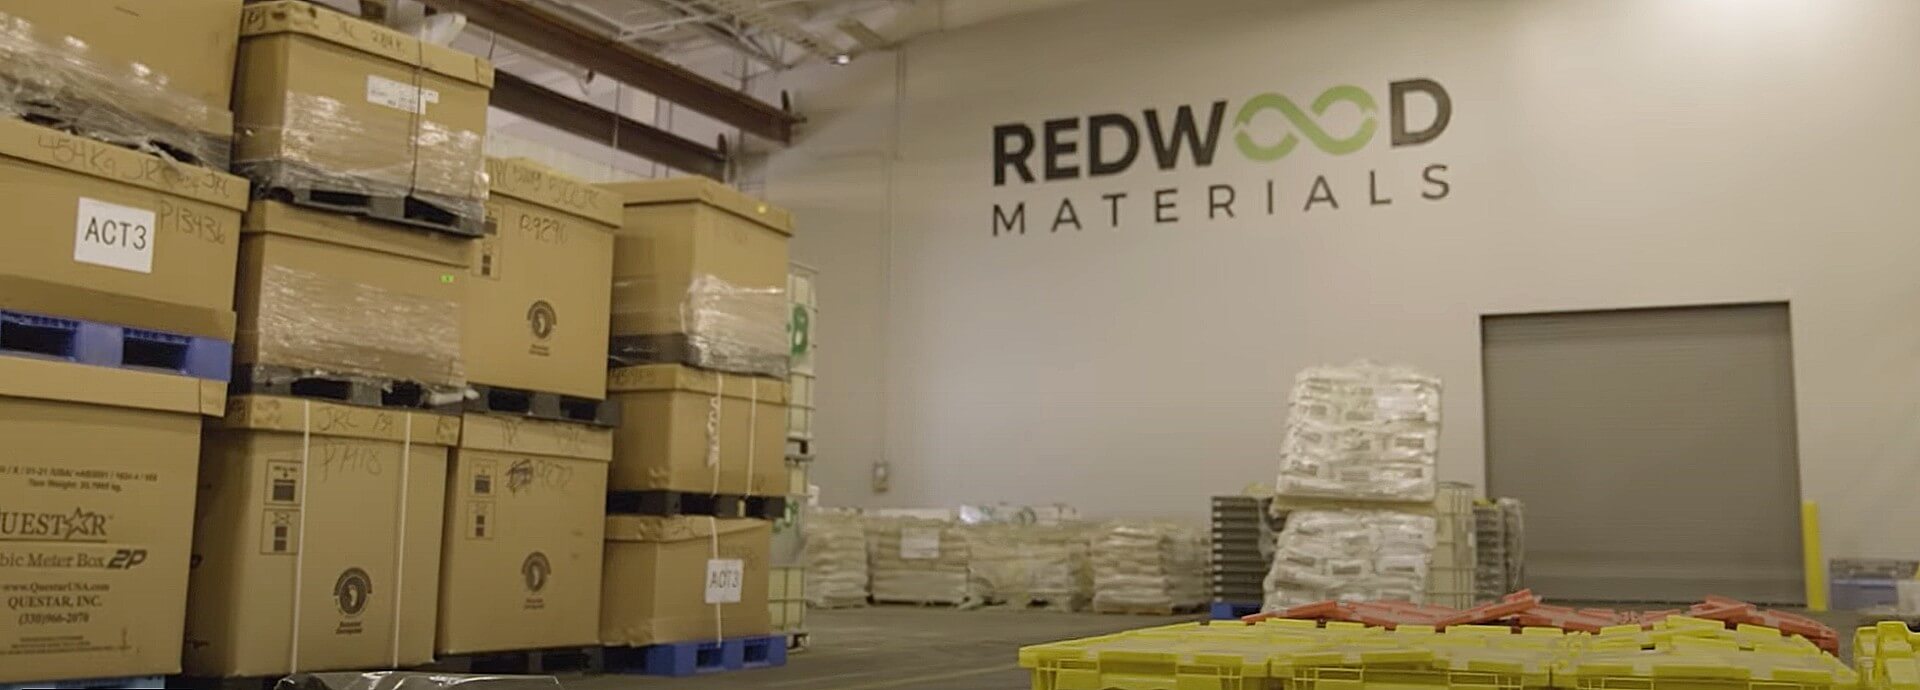 Компанія Redwood Materials схвалила податкові пільги на суму понад 100 мільйонів доларів США